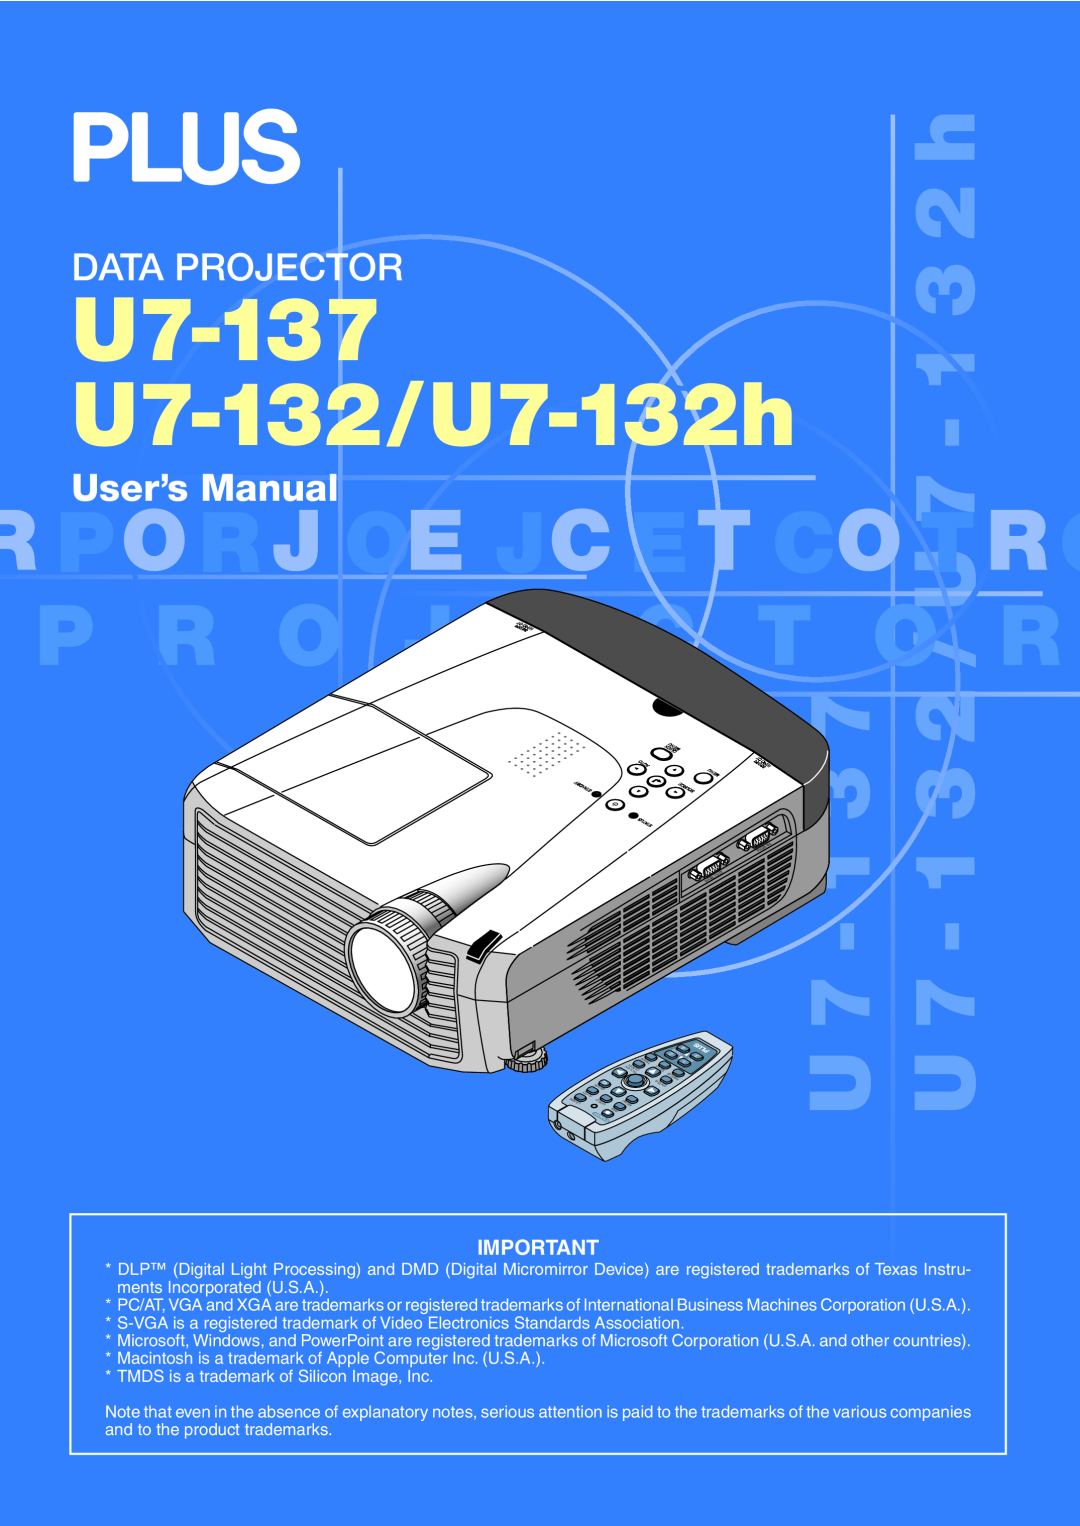 PLUS Vision user manual U7-137 U7-132/U7-132h, U 7 - 1 3 7 U 7 - 1 3 2 / U 7 - 1 3 2 h, Data Projector, User’s Manual 